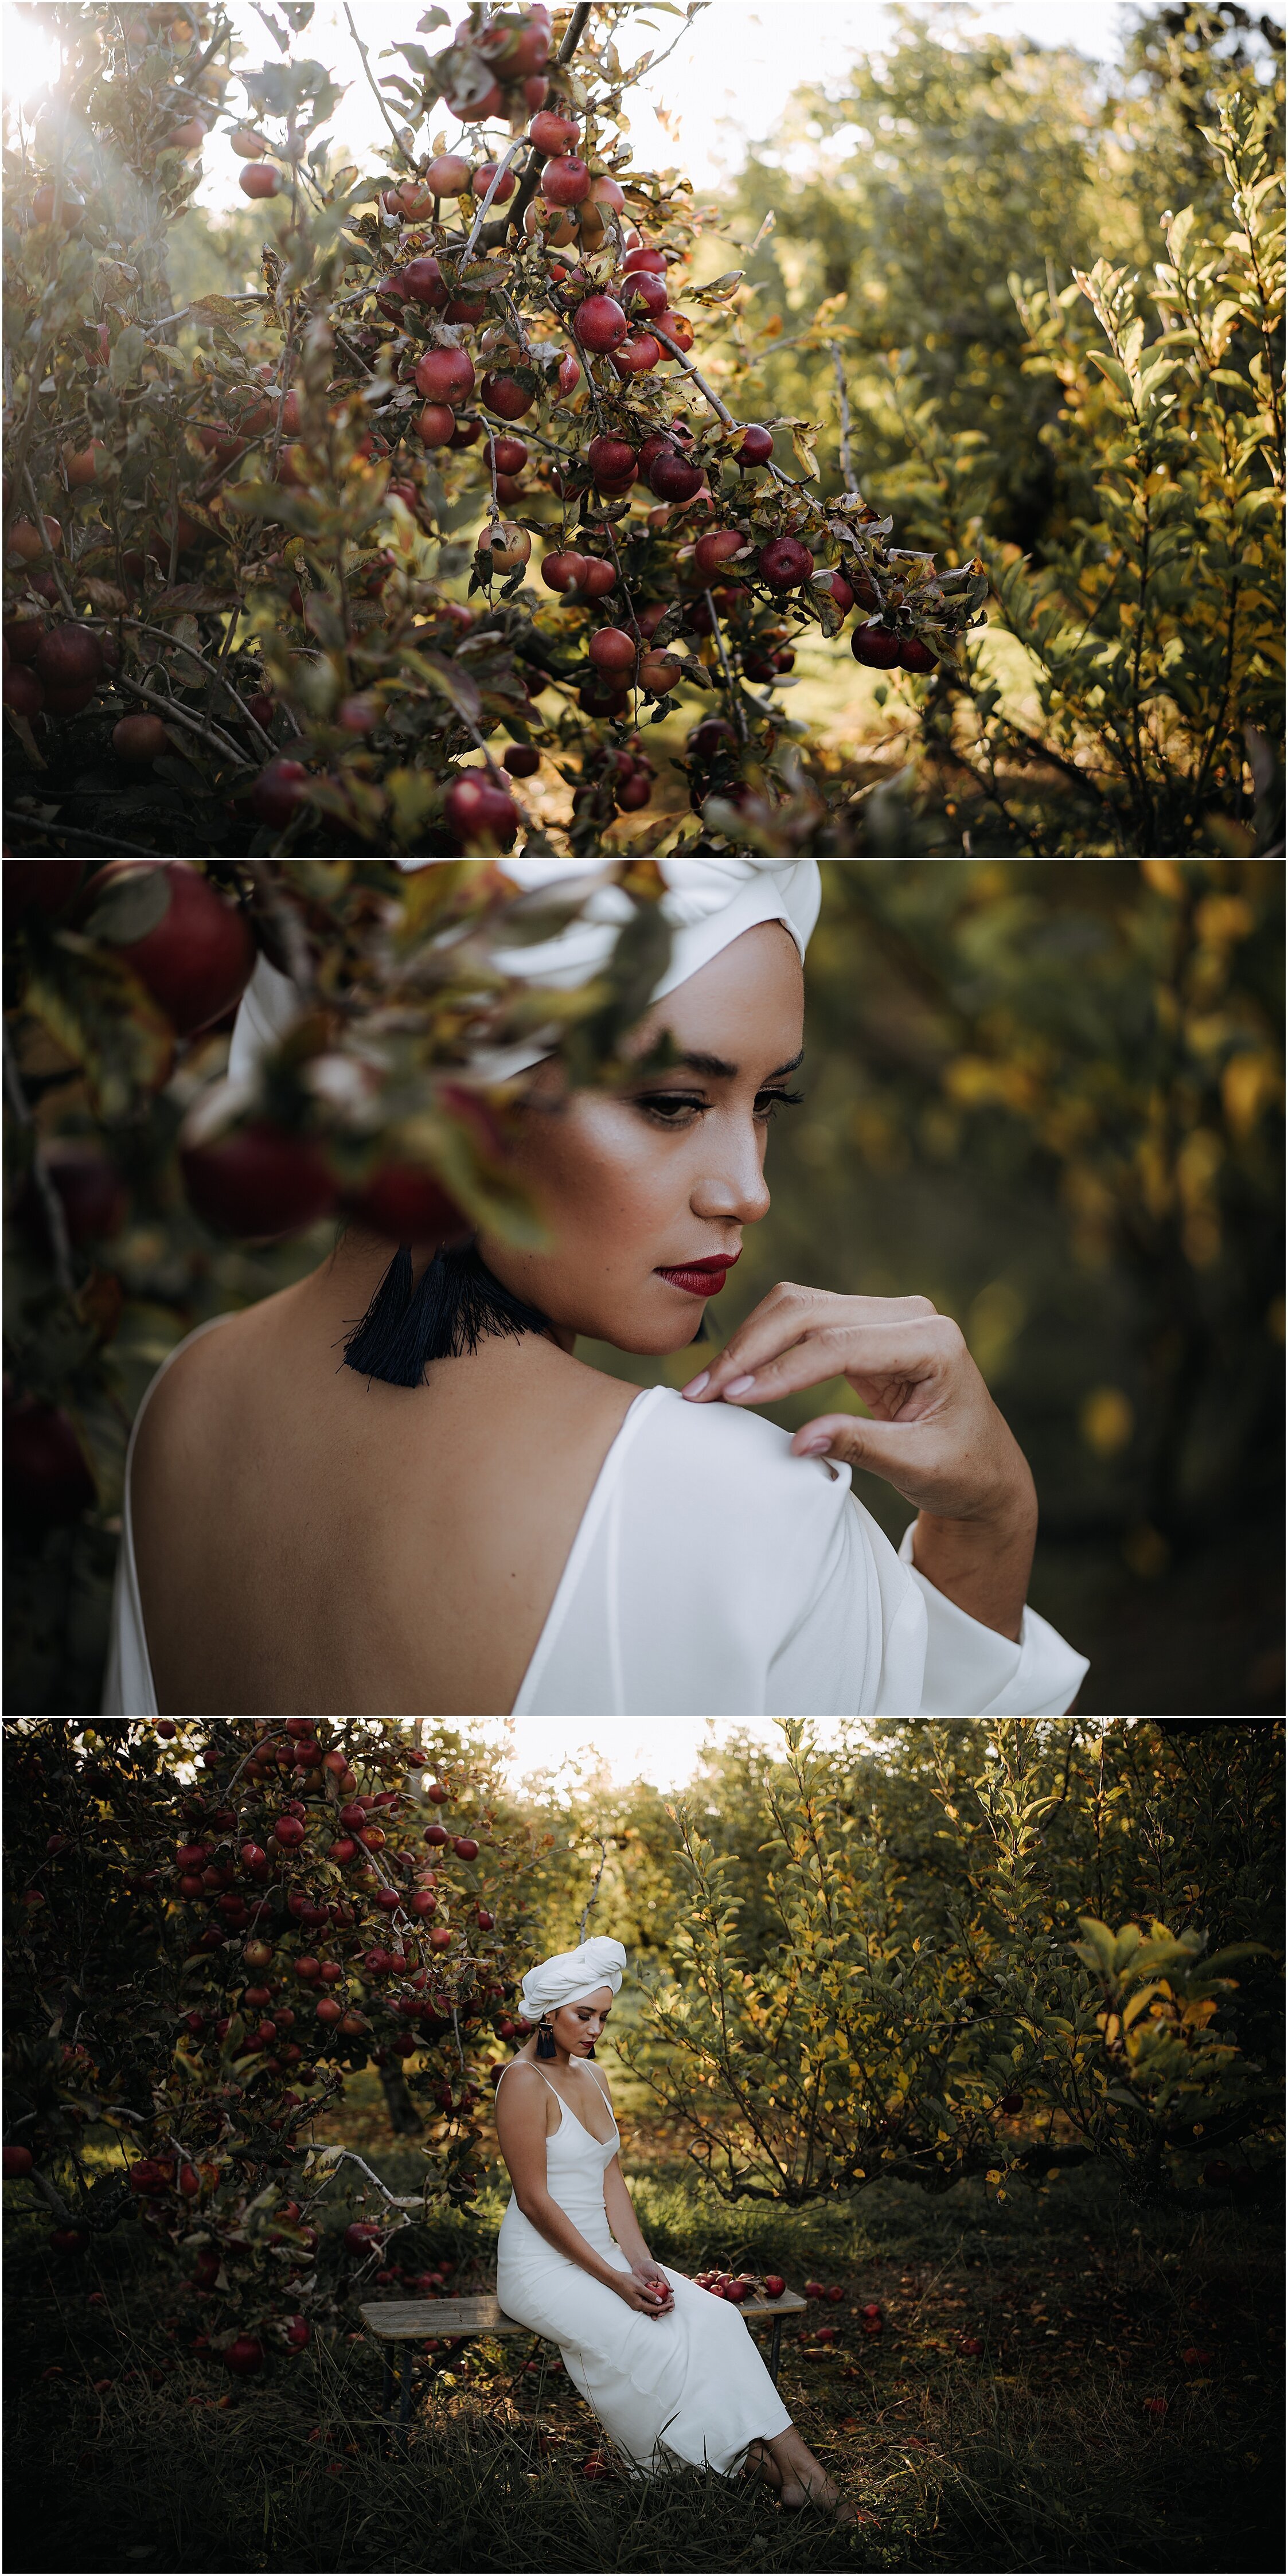 Zanda+Auckland+wedding+photographer+unique+portrait+photoshoot+ideas+autumn+winter+Windmill+apple+orchard+Coatesville+New+Zealand_11.jpeg